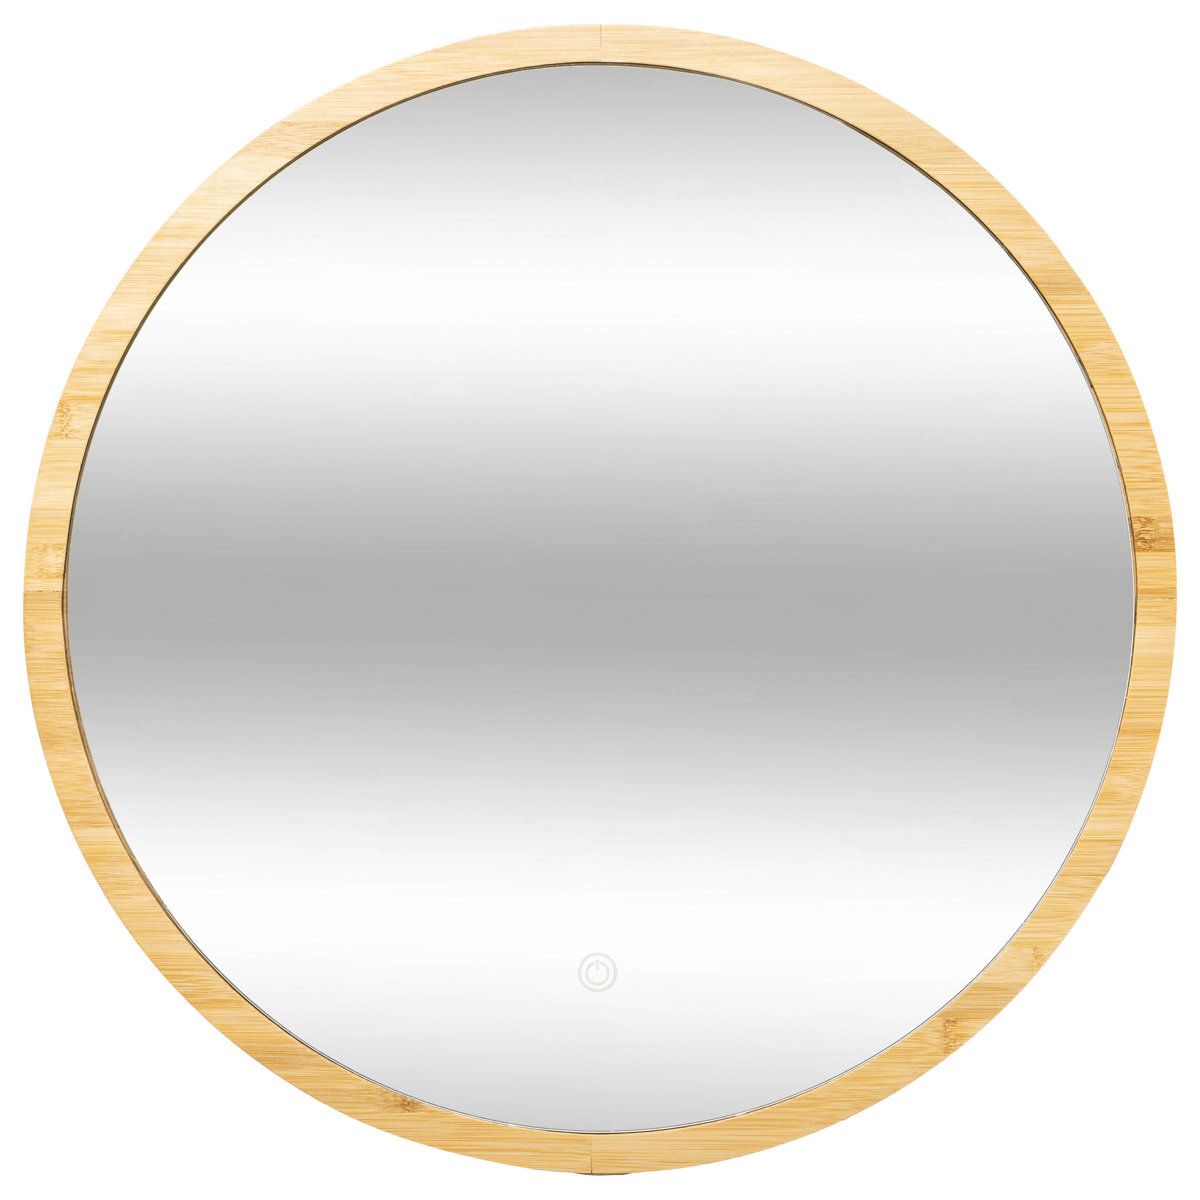 5five Simply Smart Koupelnové zrcadlo s LED podsvícením, bambusový rám, O 57 cm - EDAXO.CZ s.r.o.